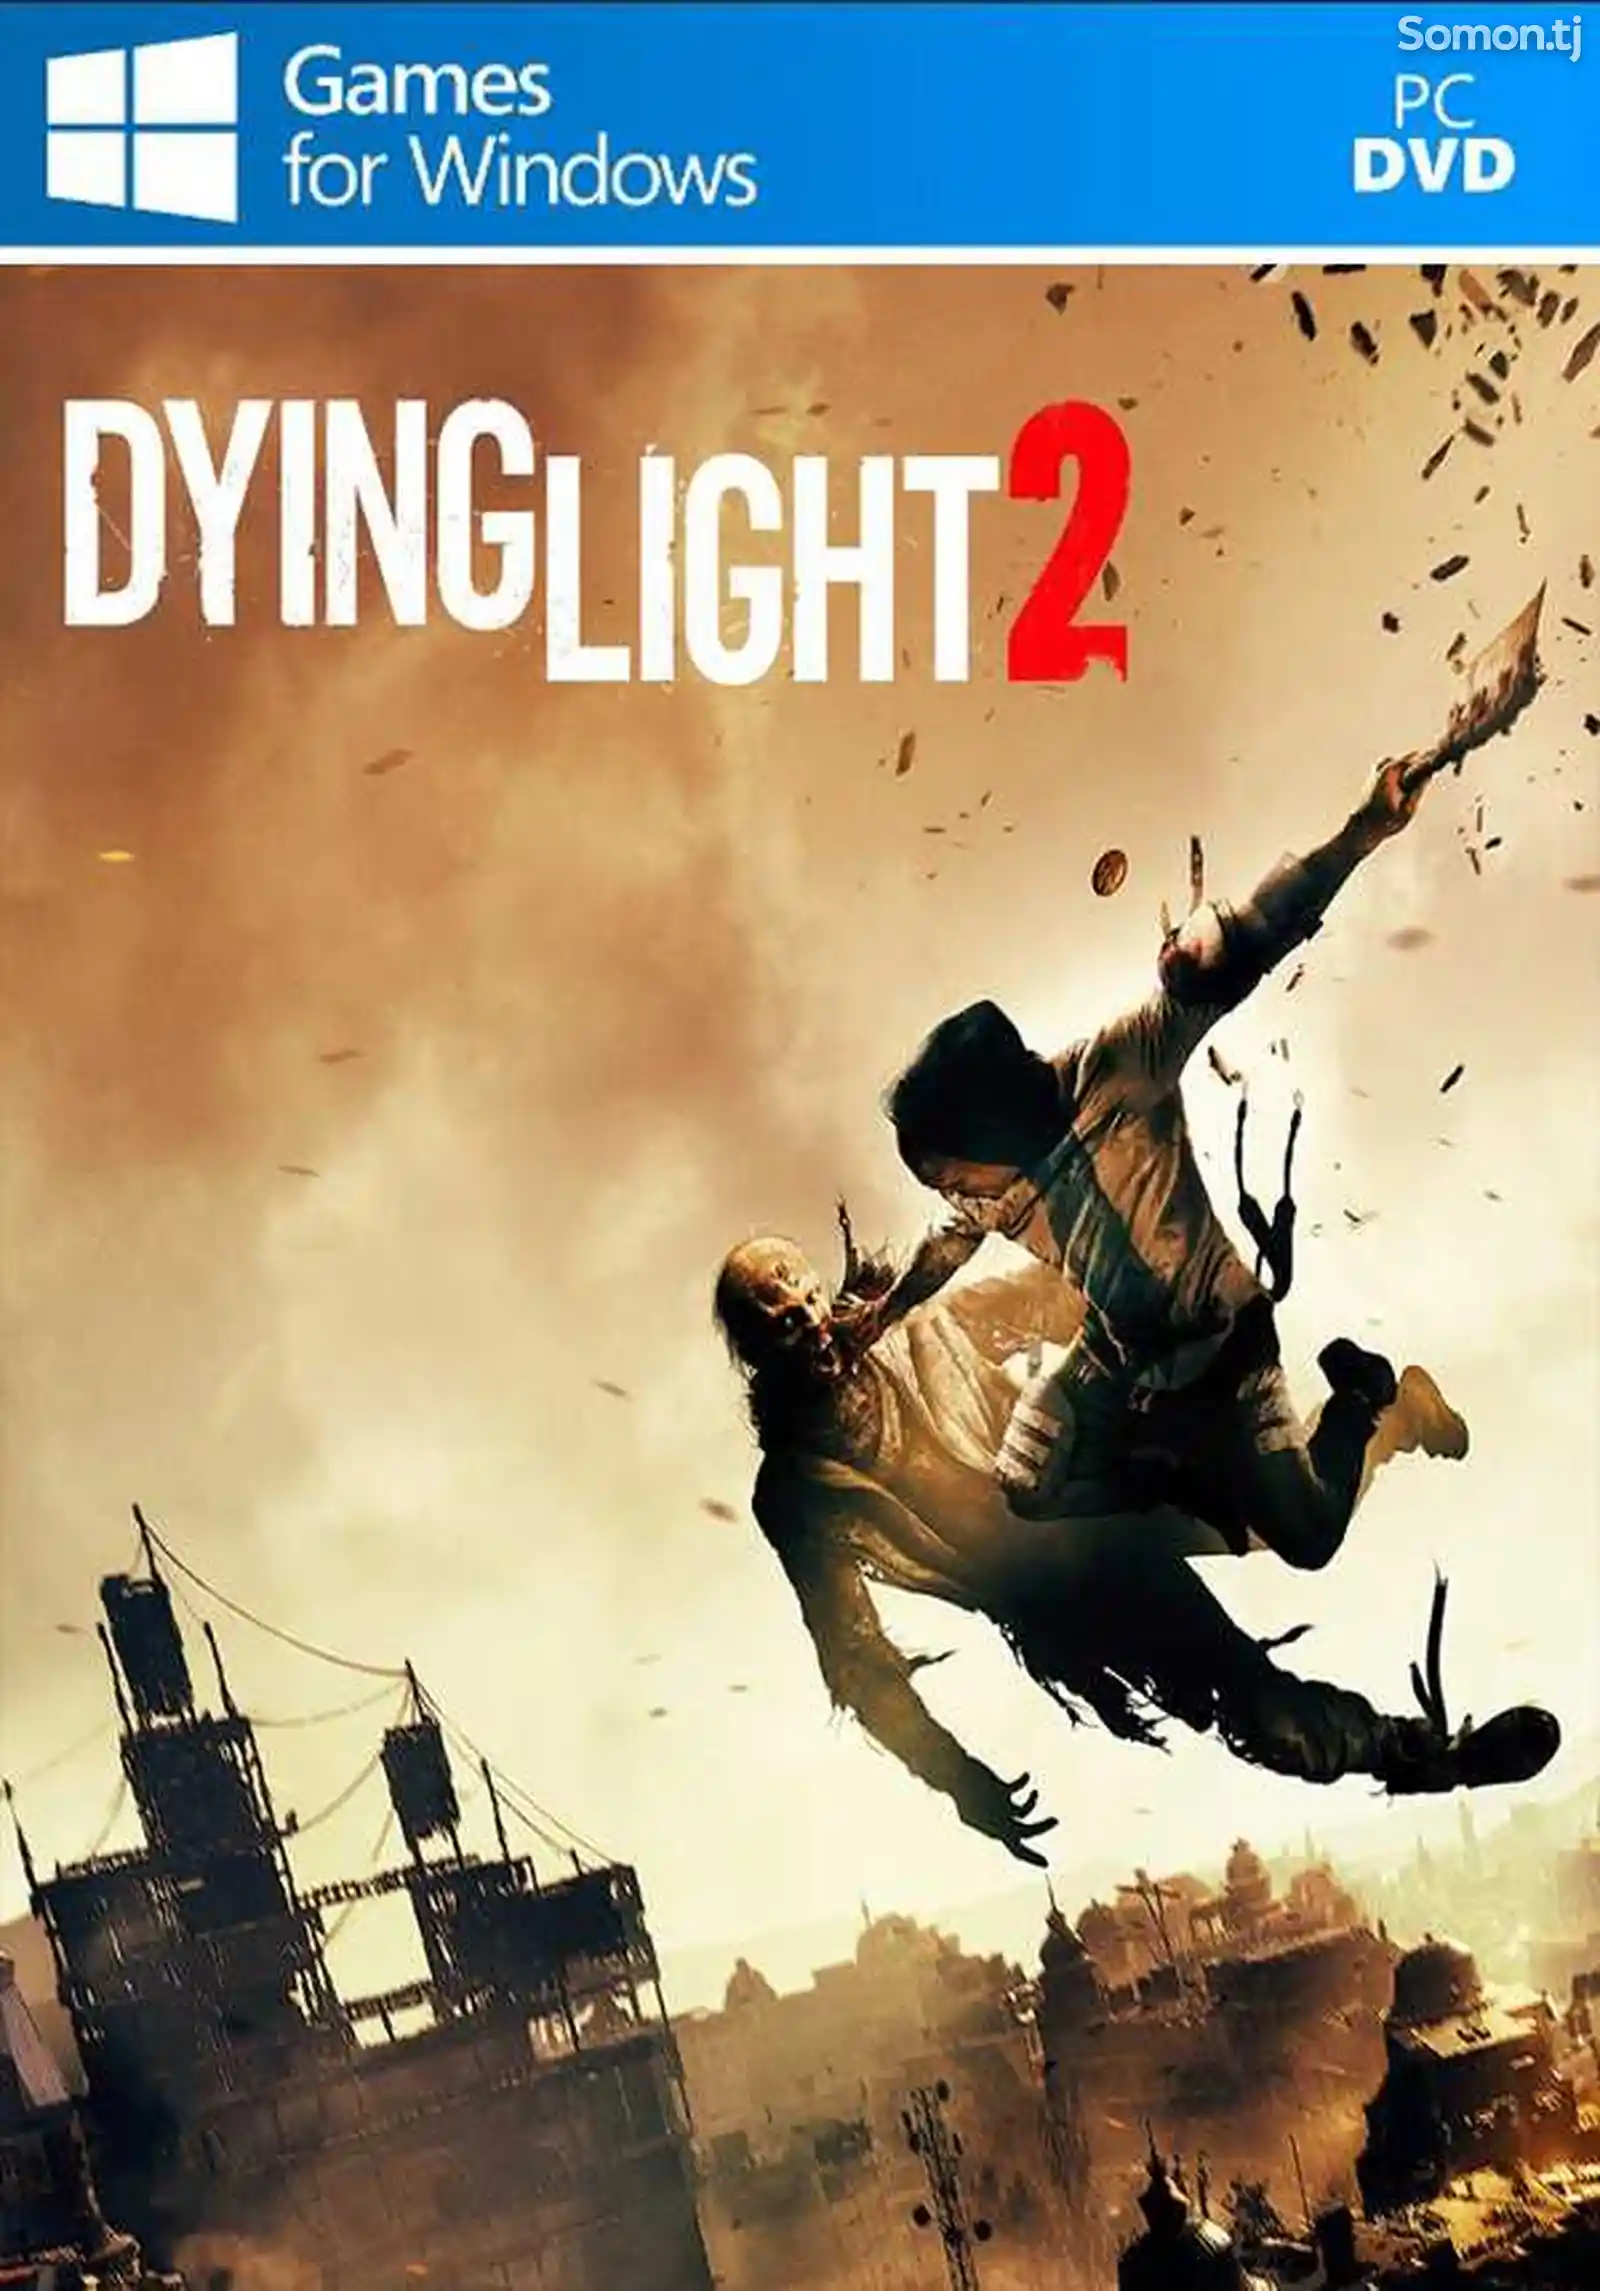 Игра Dying light 2 для компьютера-пк-pc-1